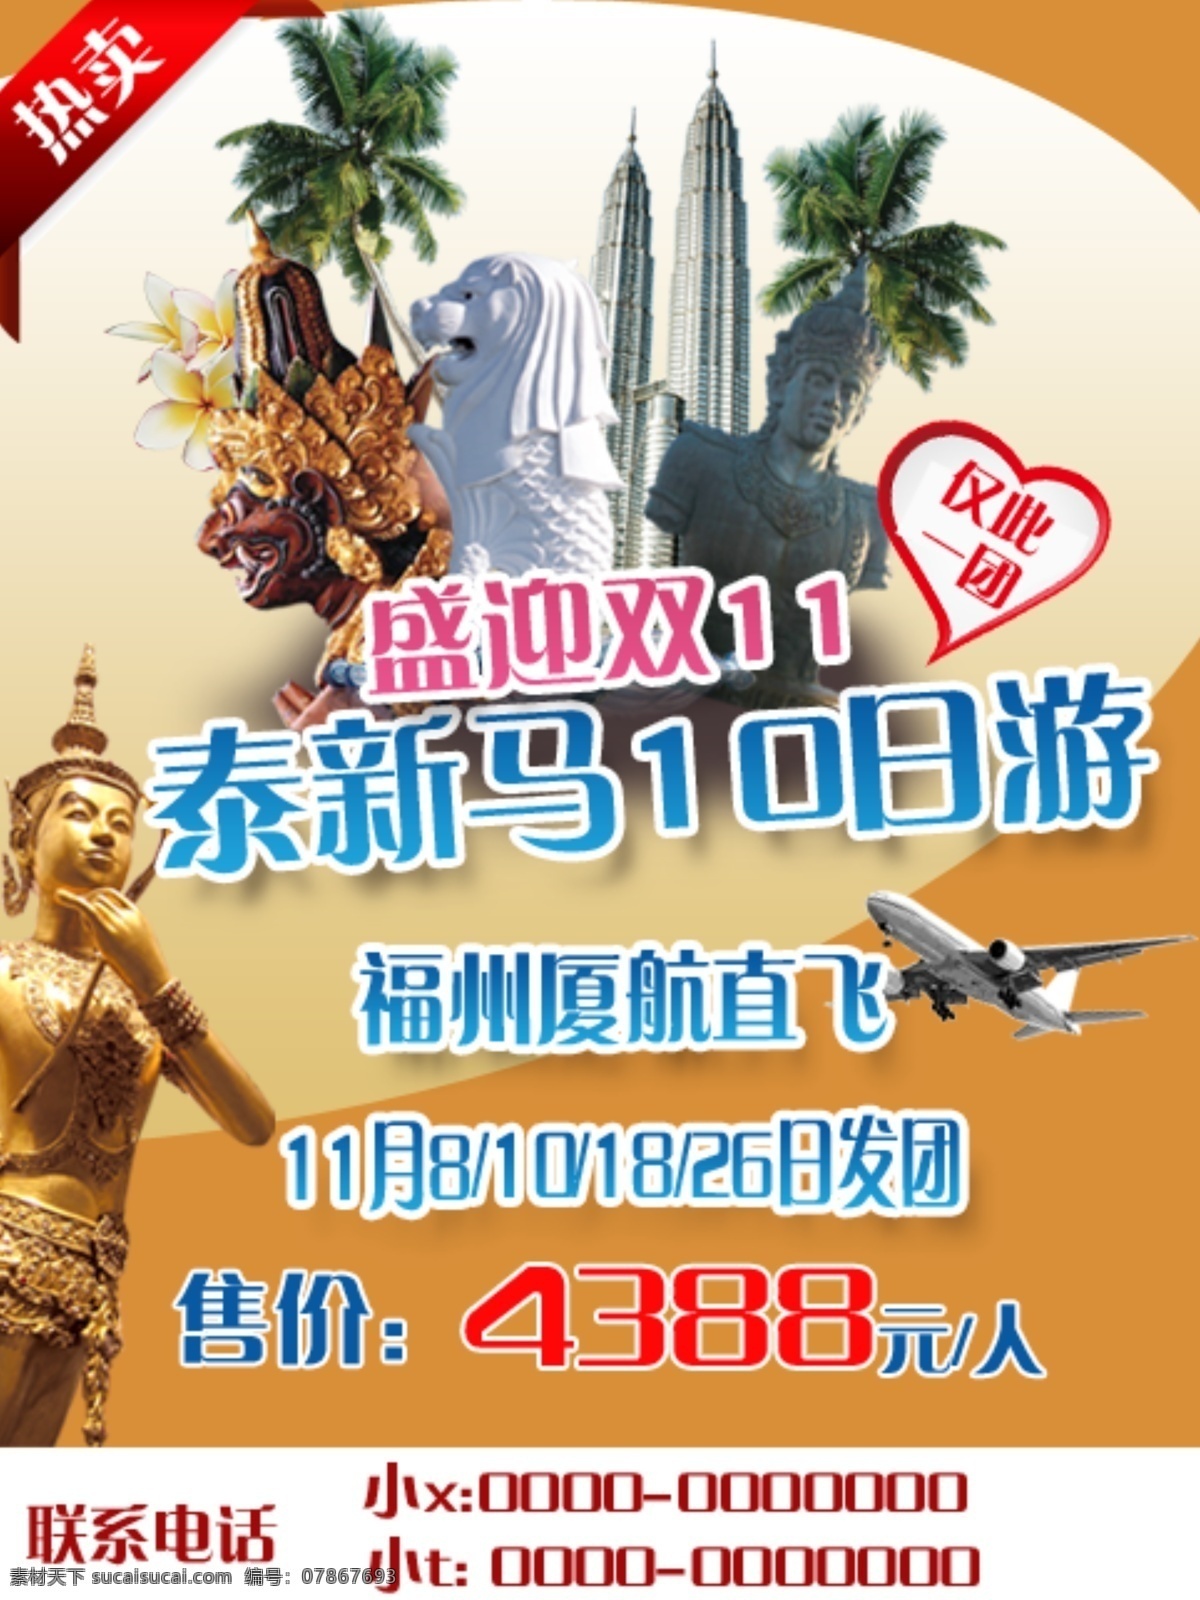 泰国旅游广告 泰国 旅游 雕像 双子星塔 新加坡 马来西亚 广告 白色